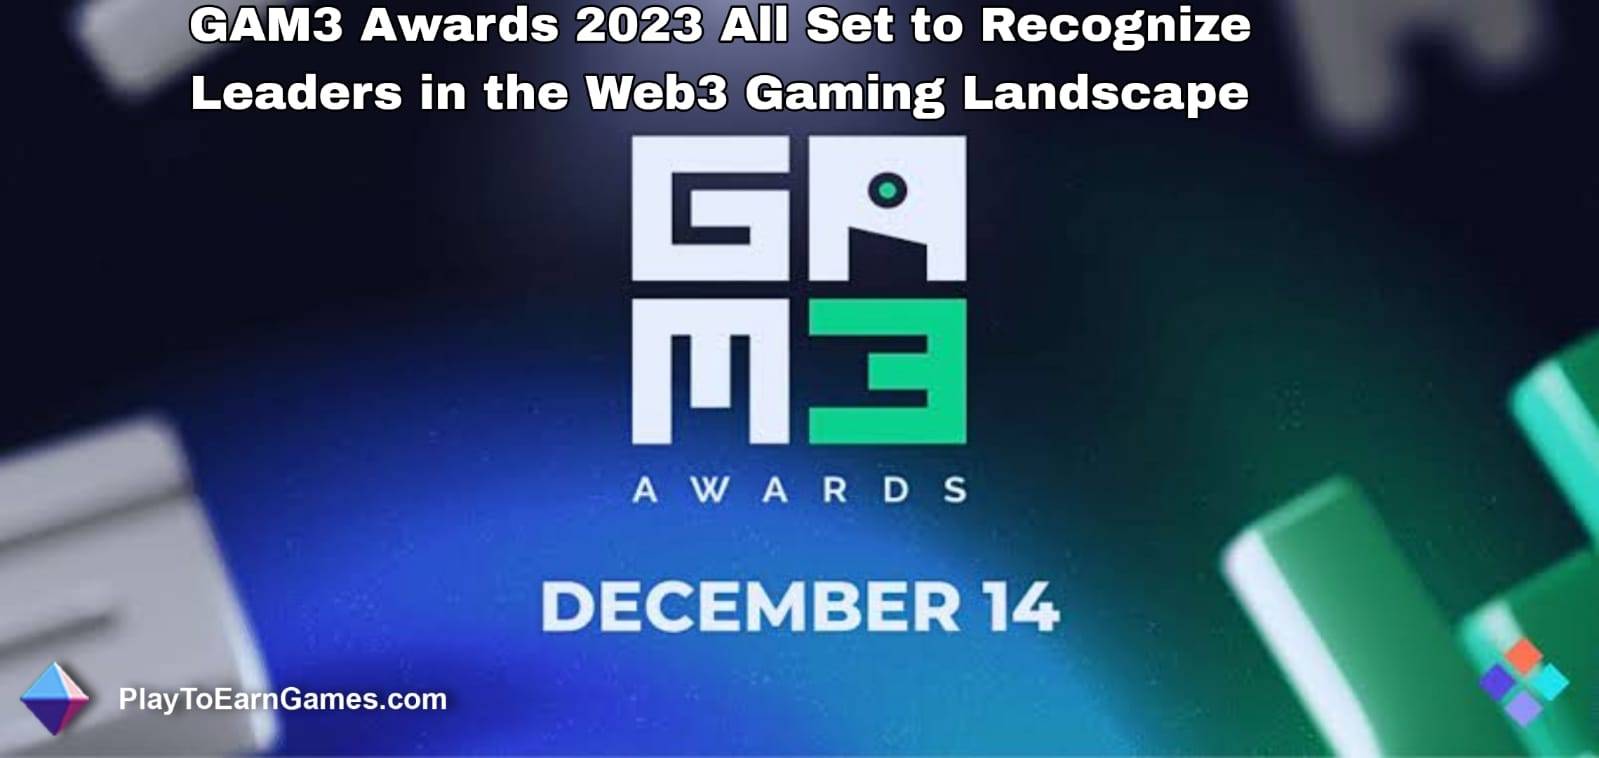 Die GAM3 Awards 2023 sind bereit, Führungskräfte in der Web3-Gaming-Landschaft anzuerkennen